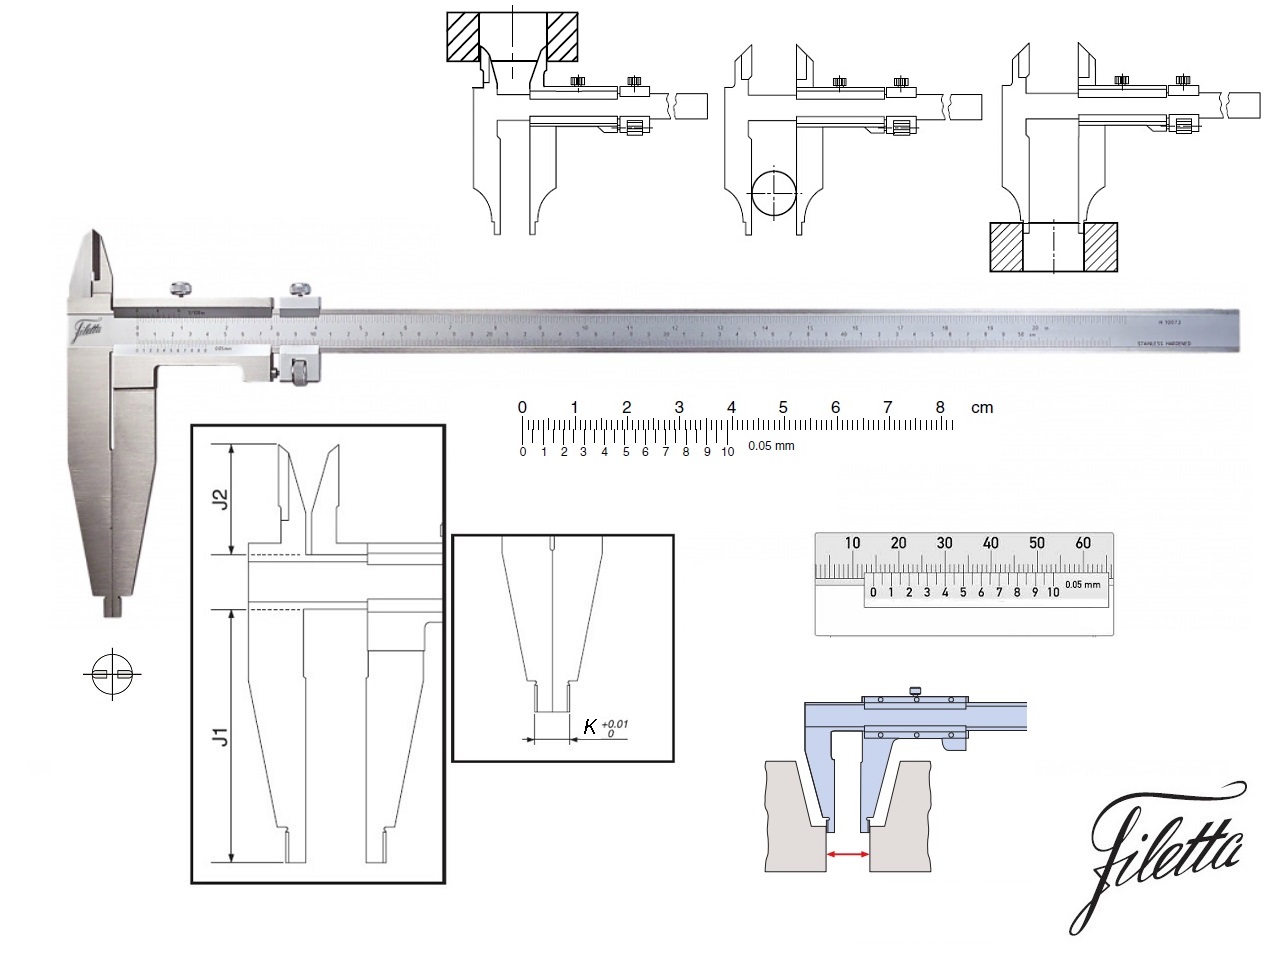 Posuvné měřítko Filetta 0-500 mm, čelisti 150 mm, s měřicími nožíky pro vnitřní měření